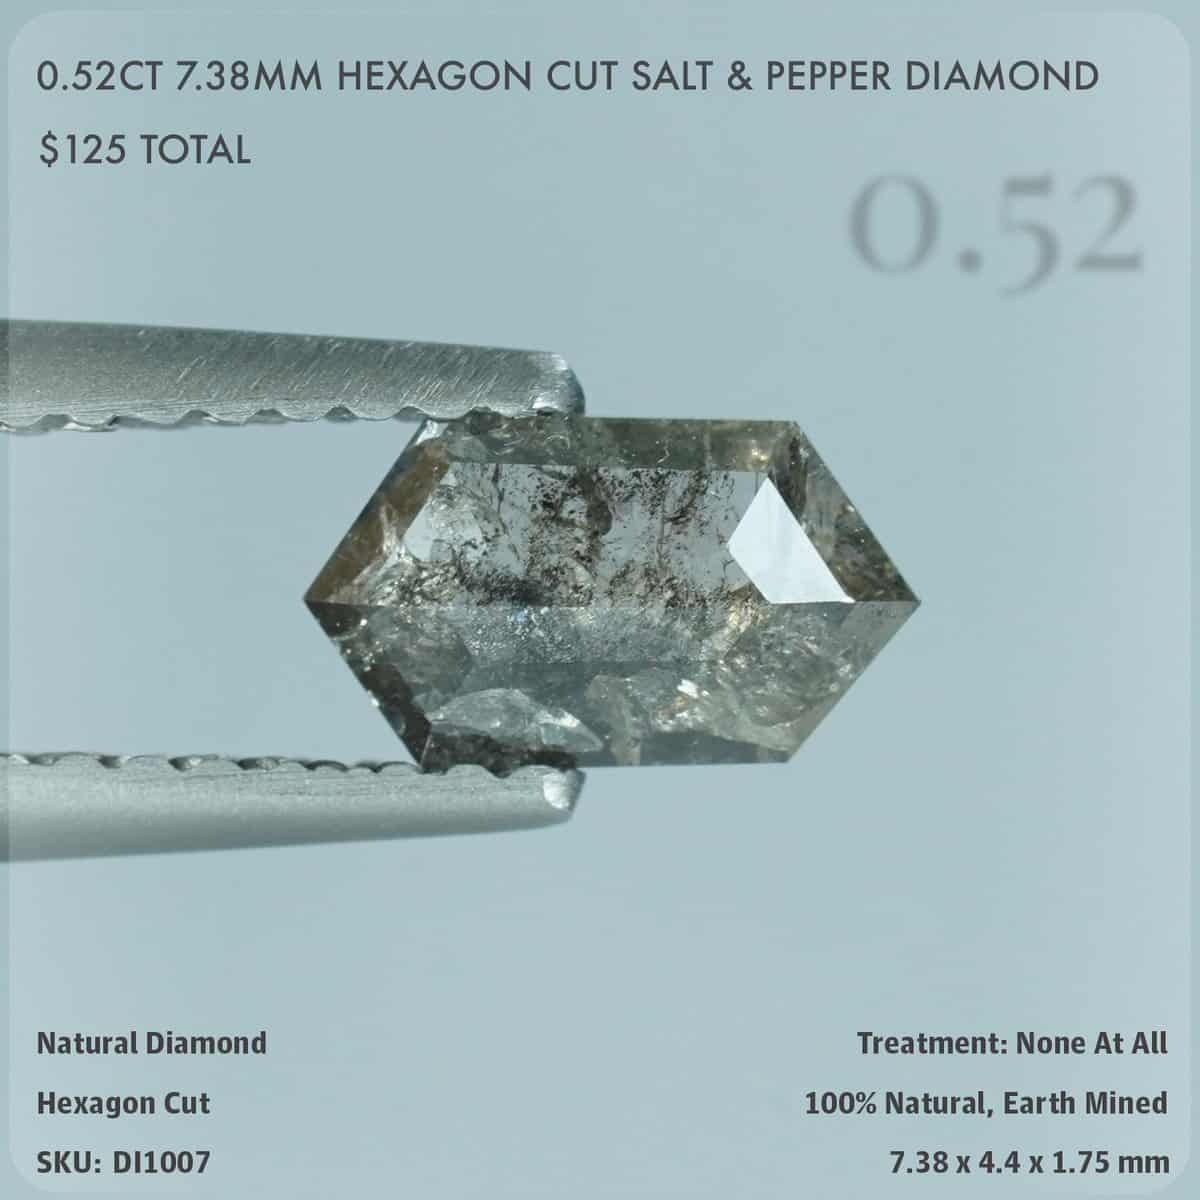 0.52CT 7.38mm Hexagon Cut Salt & Pepper Diamond